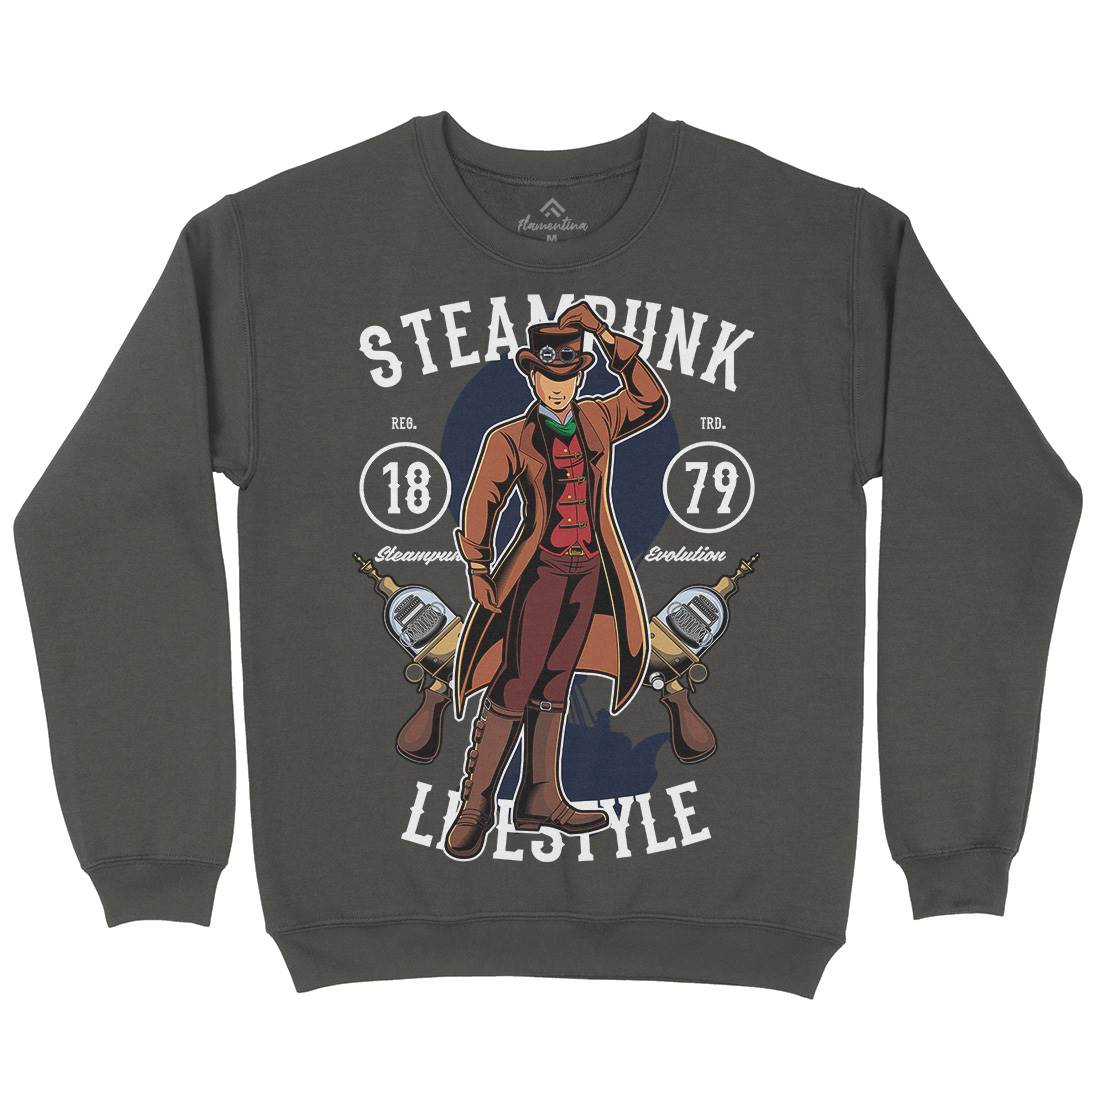 Lifestyle Kids Crew Neck Sweatshirt Steampunk C450